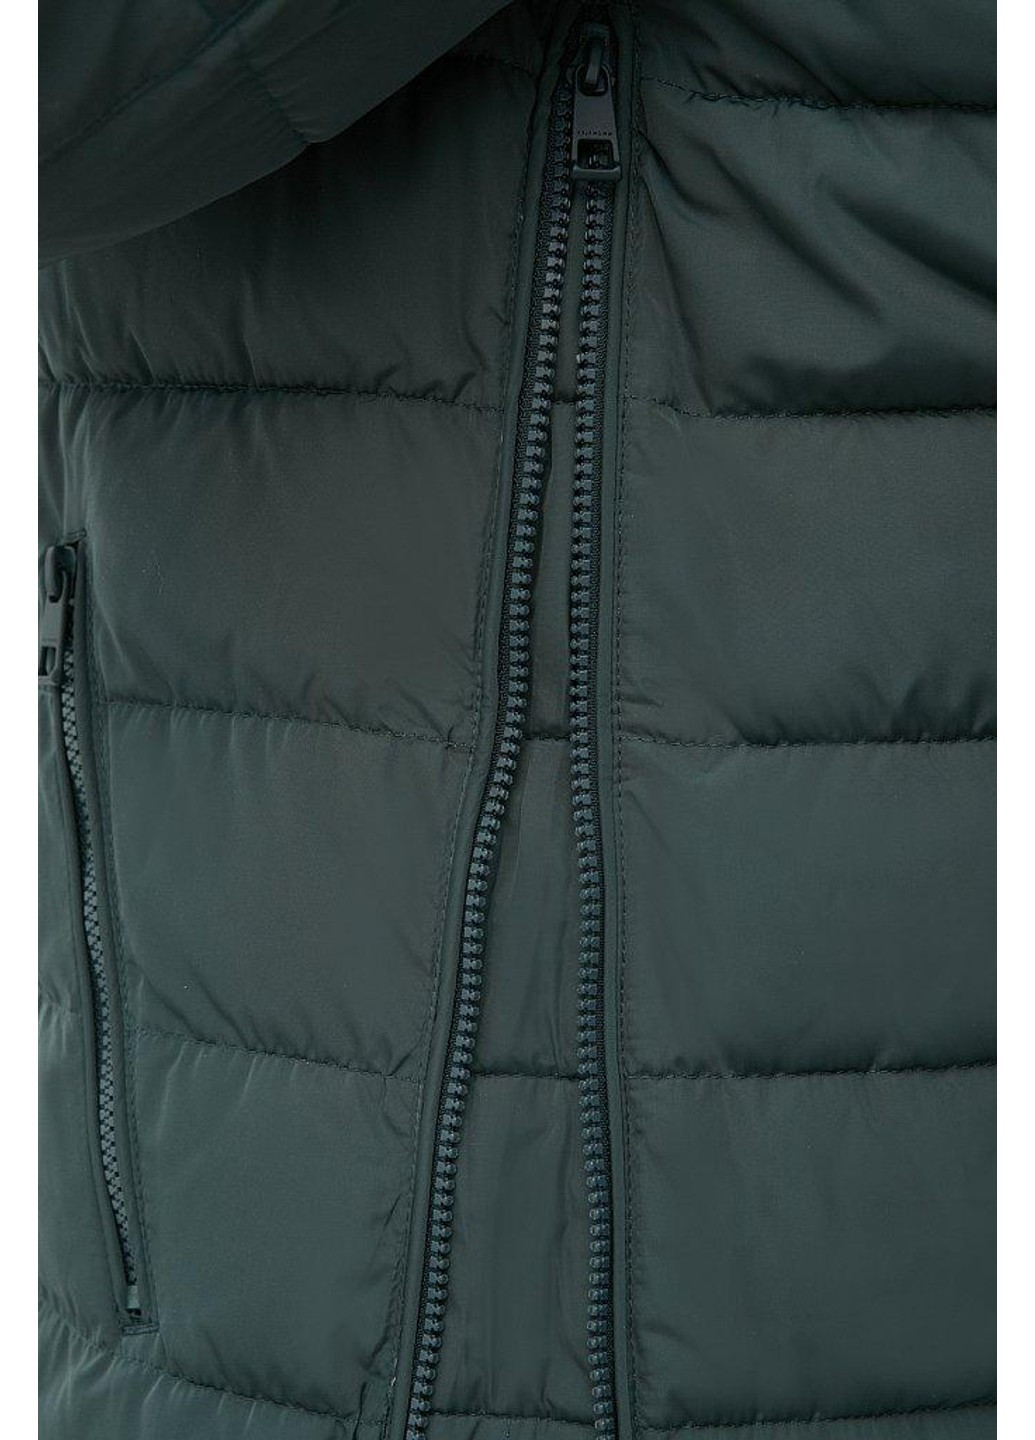 Зеленая зимняя куртка fwb160133-530 Finn Flare